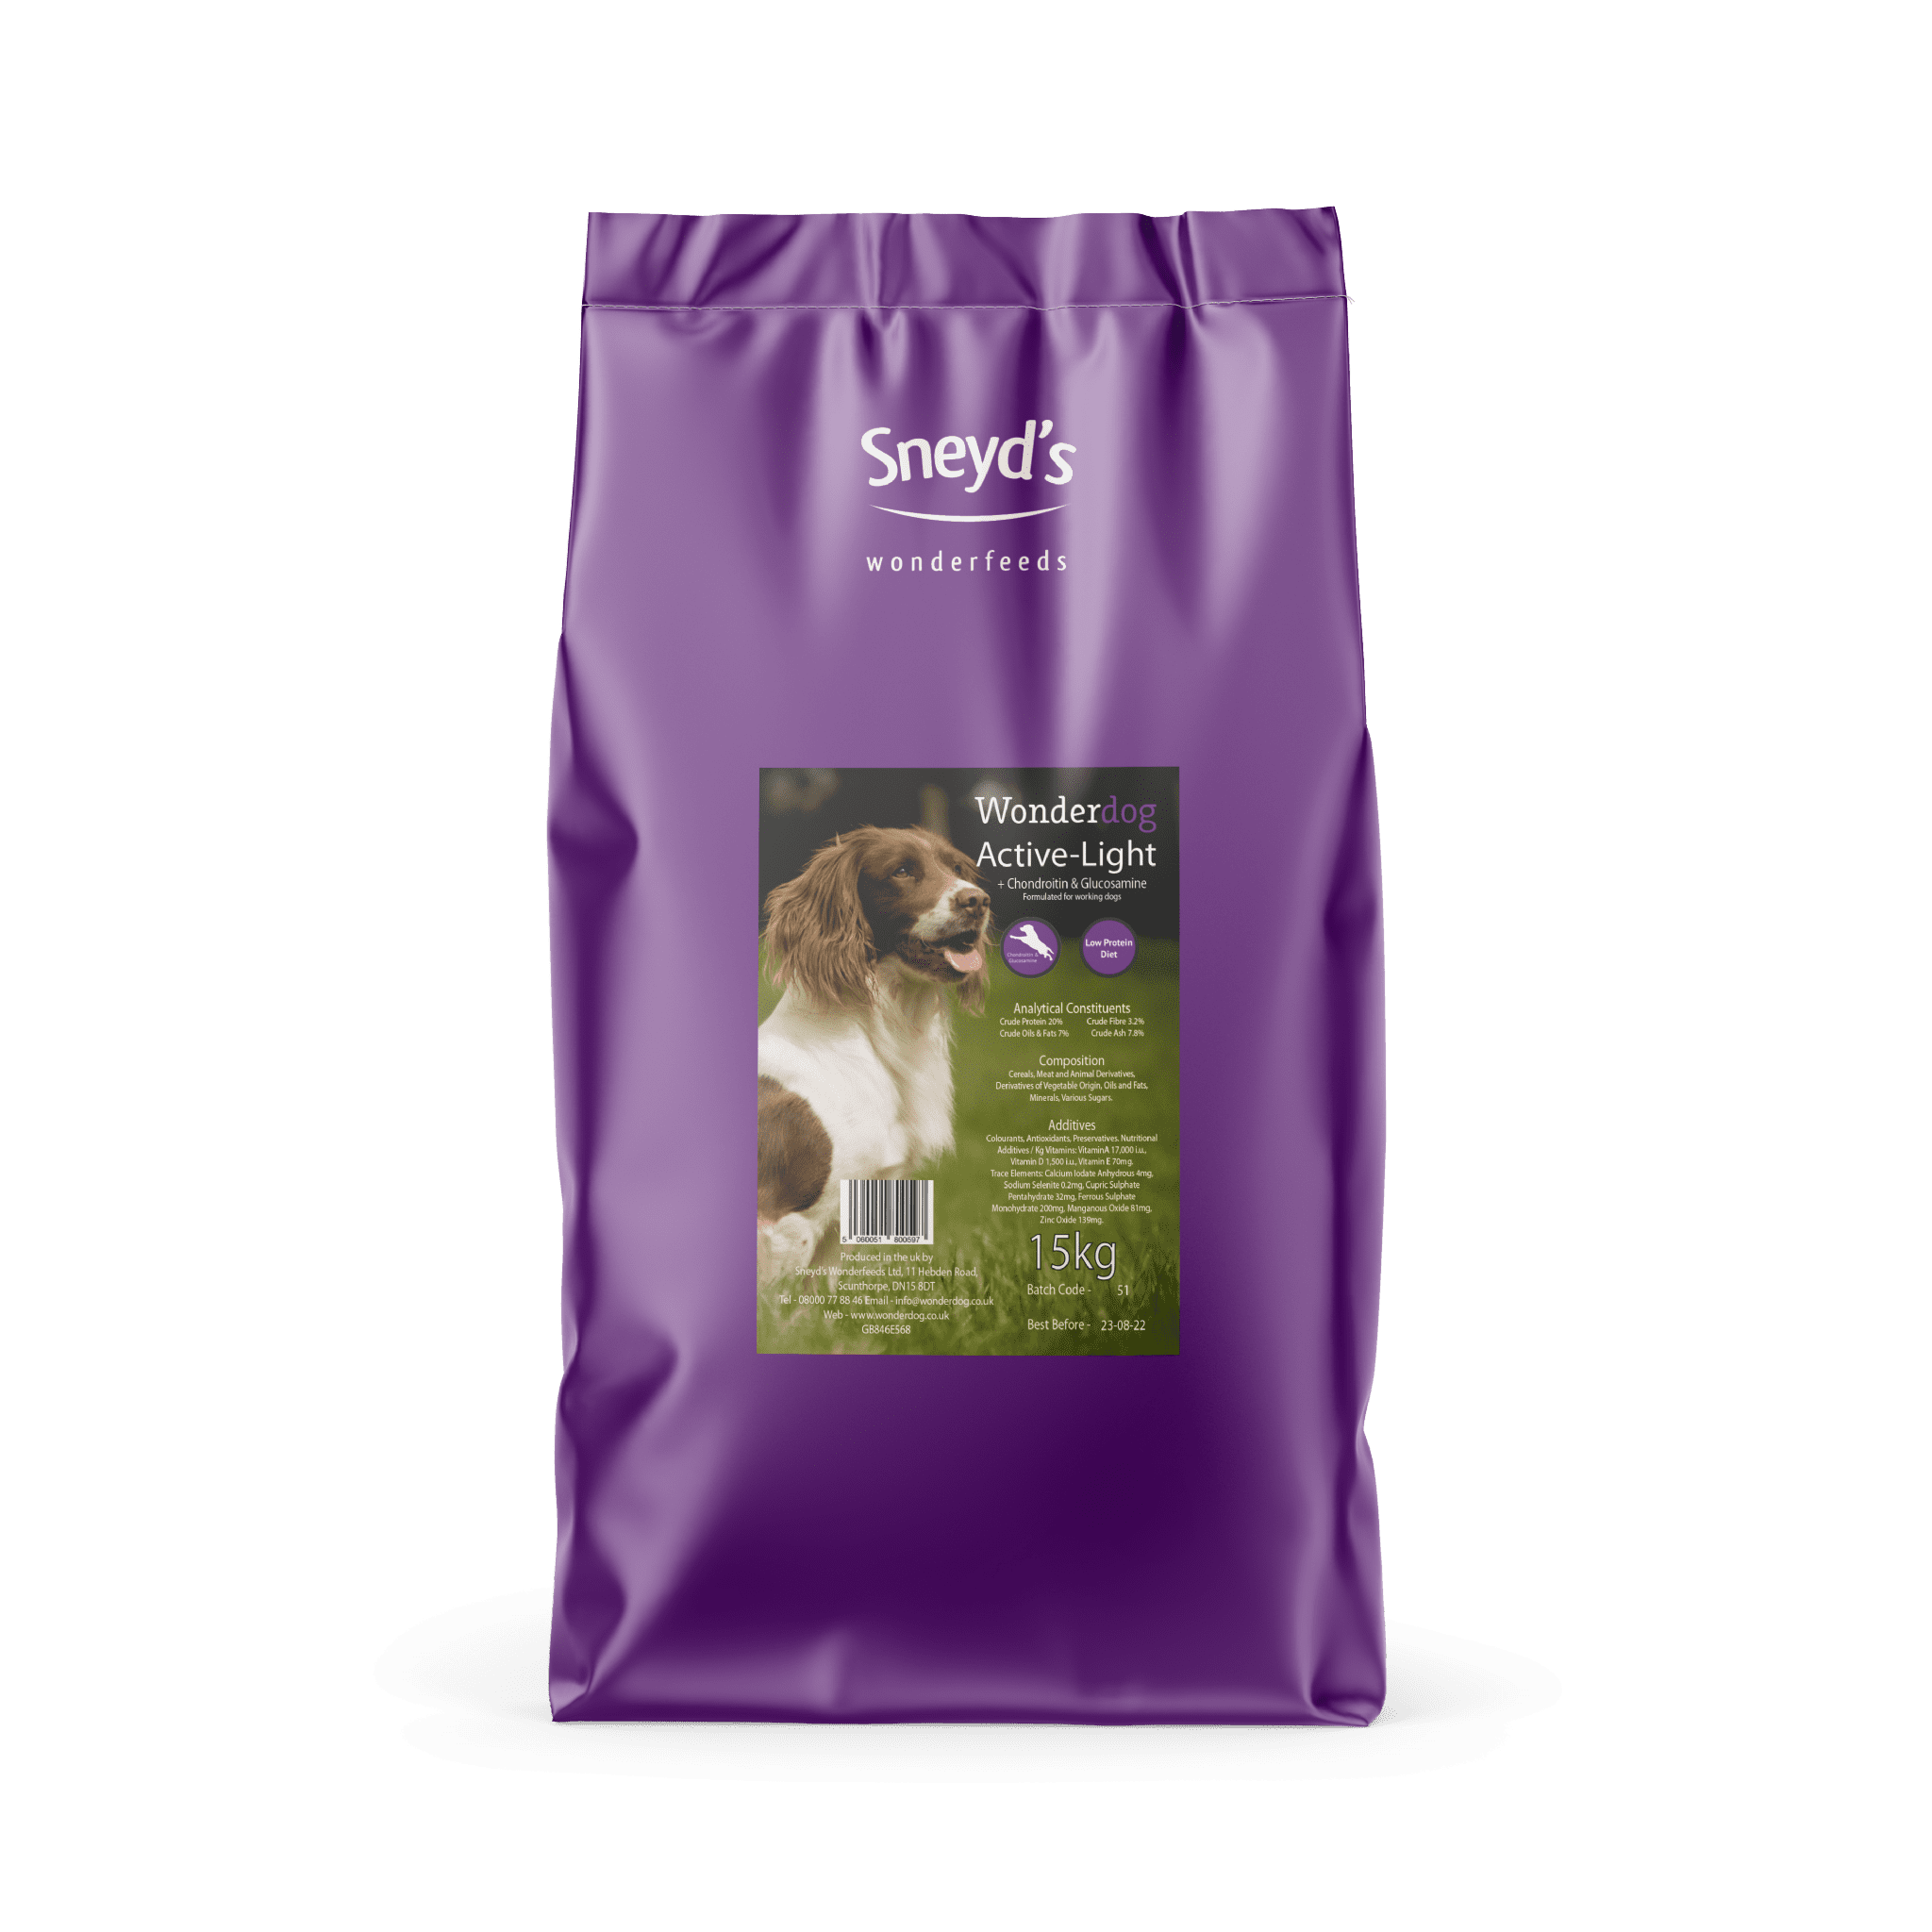 Sneyds Wonderdog Active-Light  Dog Food 15kg